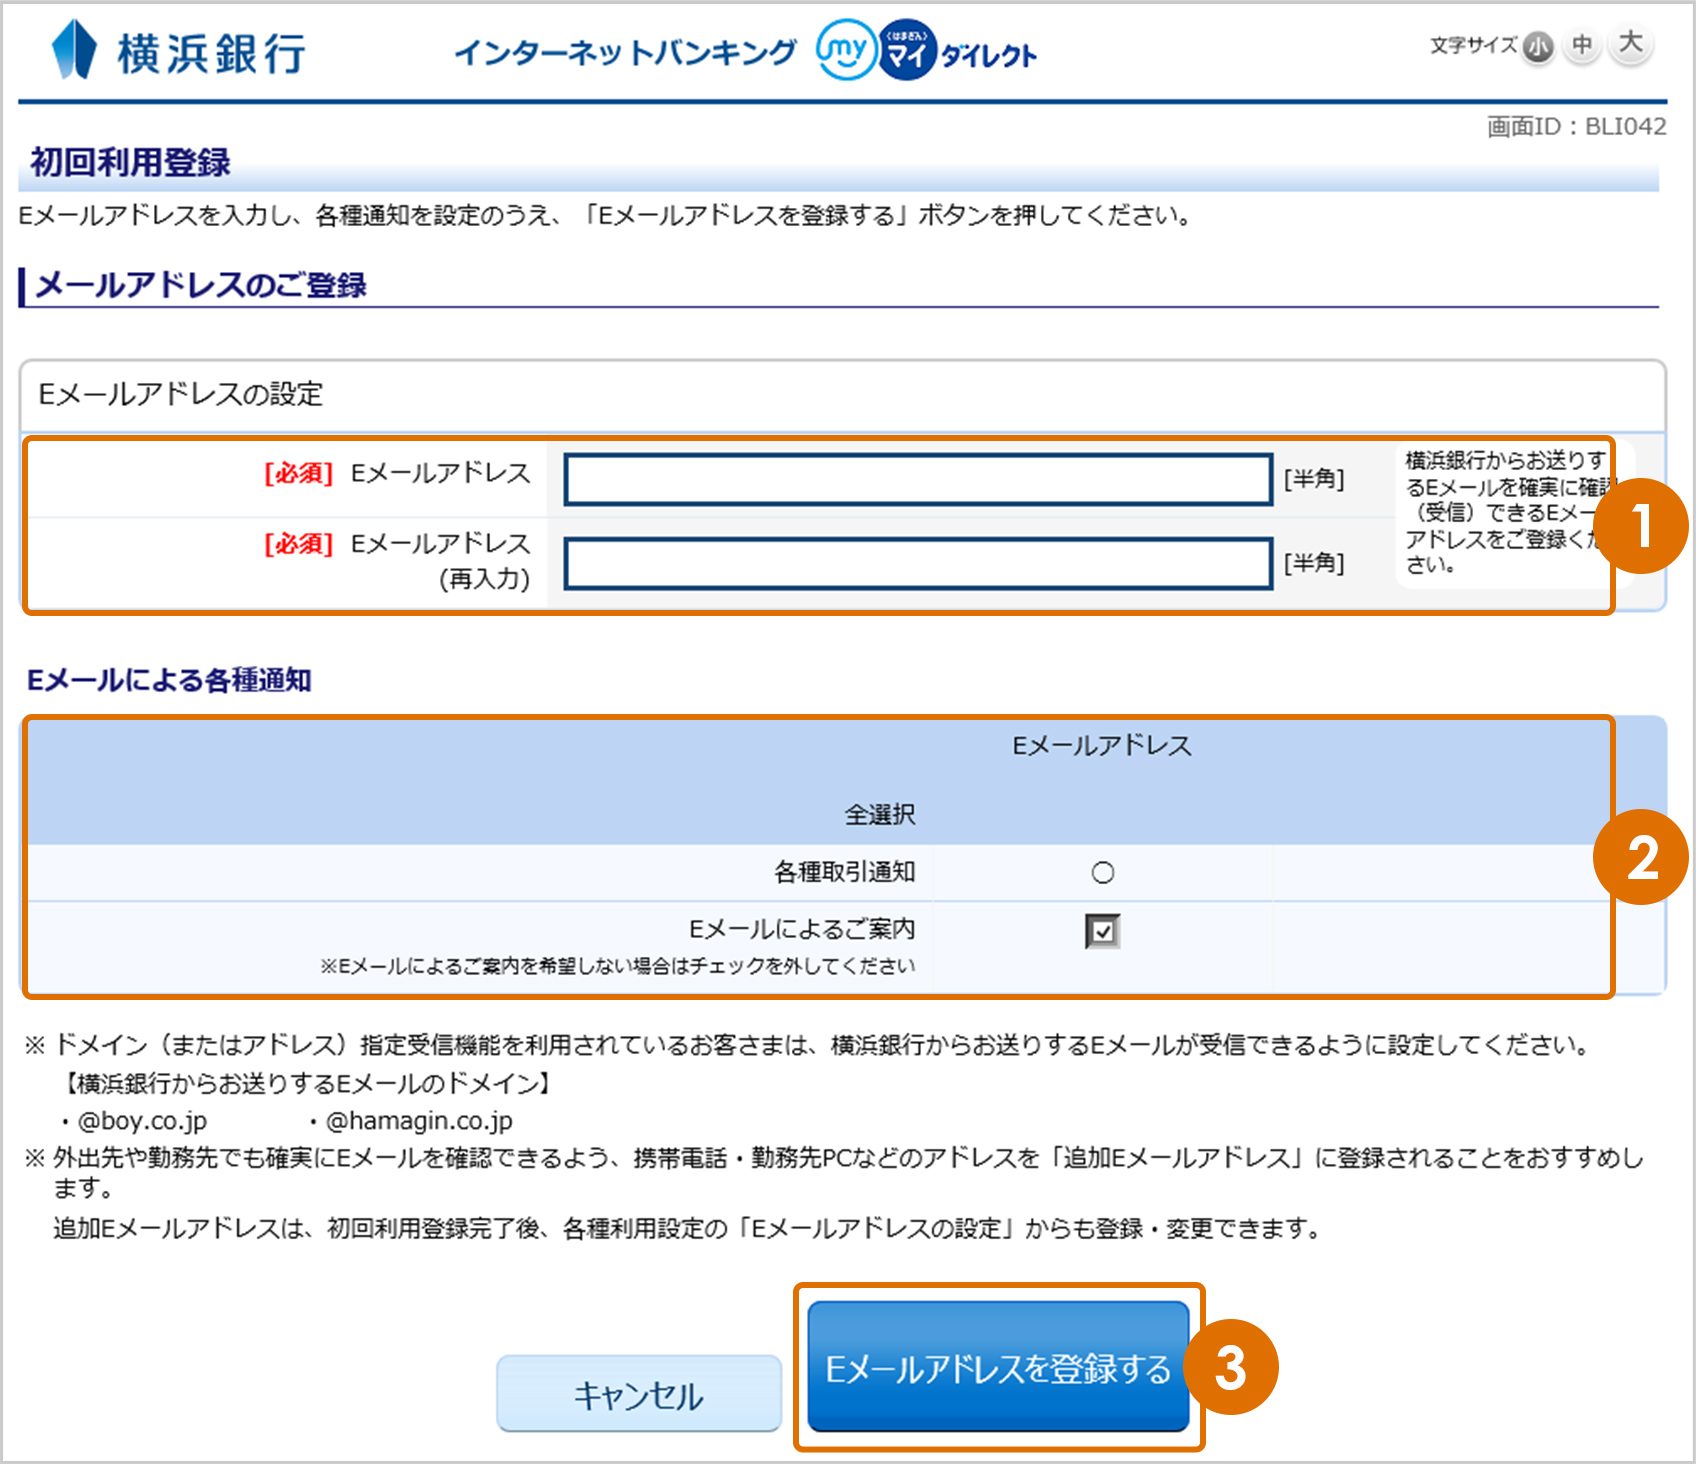 インターネット 横浜 バンキング 銀行 横浜銀行のインターネットバンキングについて